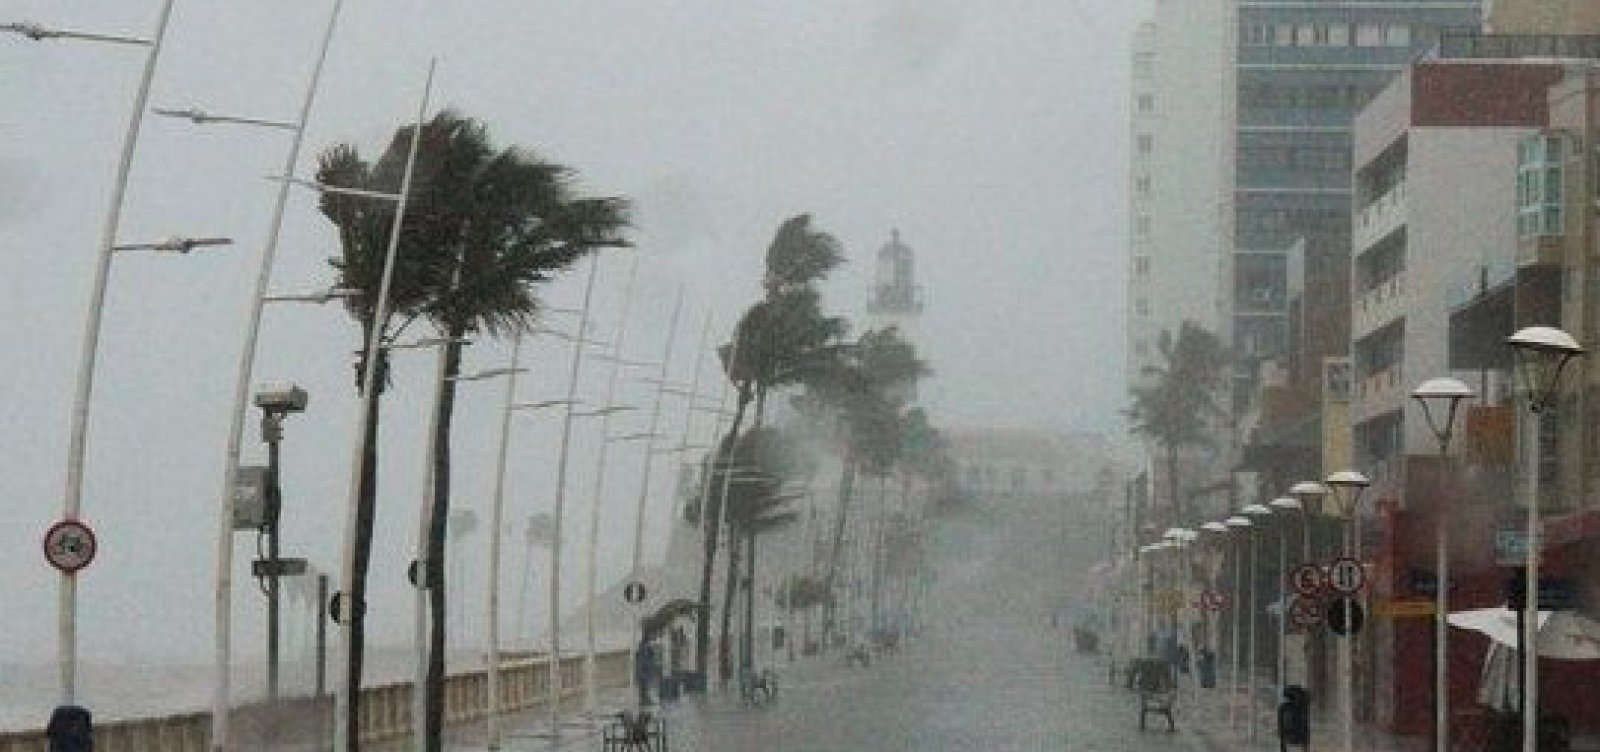 Chuvas intensas causam alagamentos e deslizamentos em Salvador nesta sexta-feira